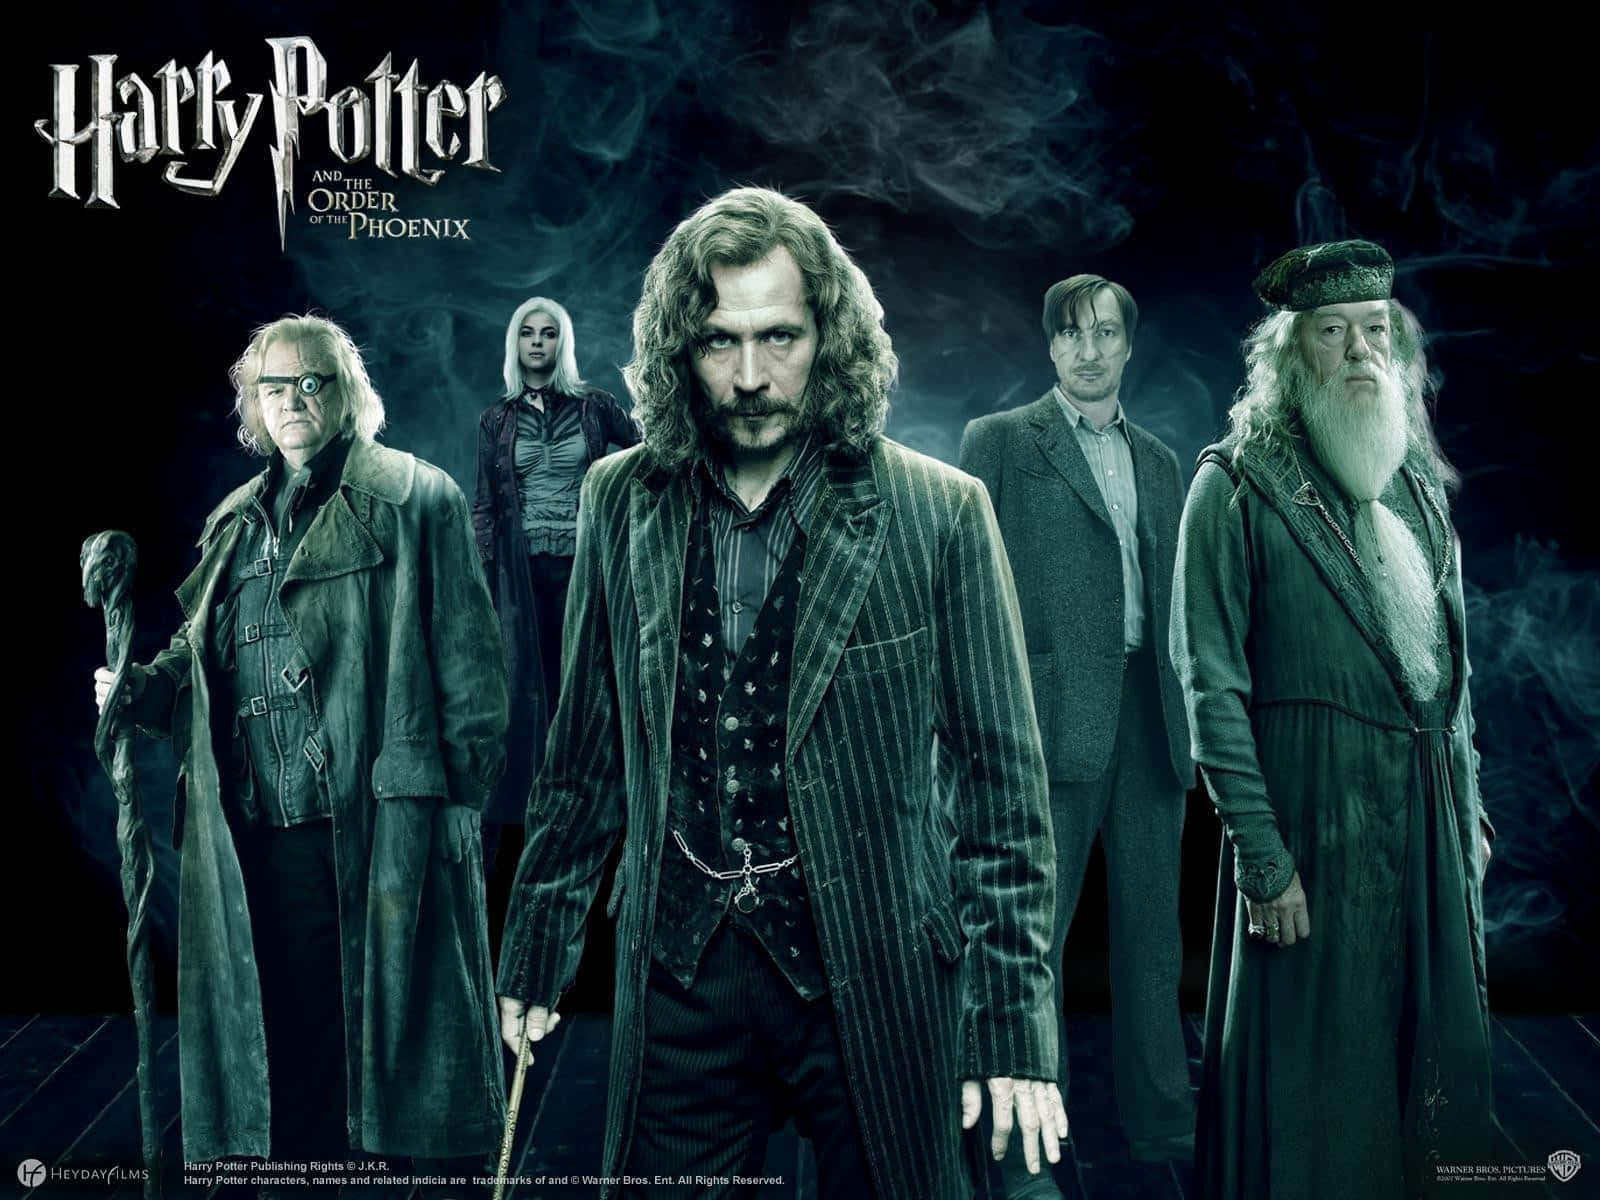 Billede En fejring af de elskede karakterer og øjeblikke fra Harry Potter franchisen. Wallpaper